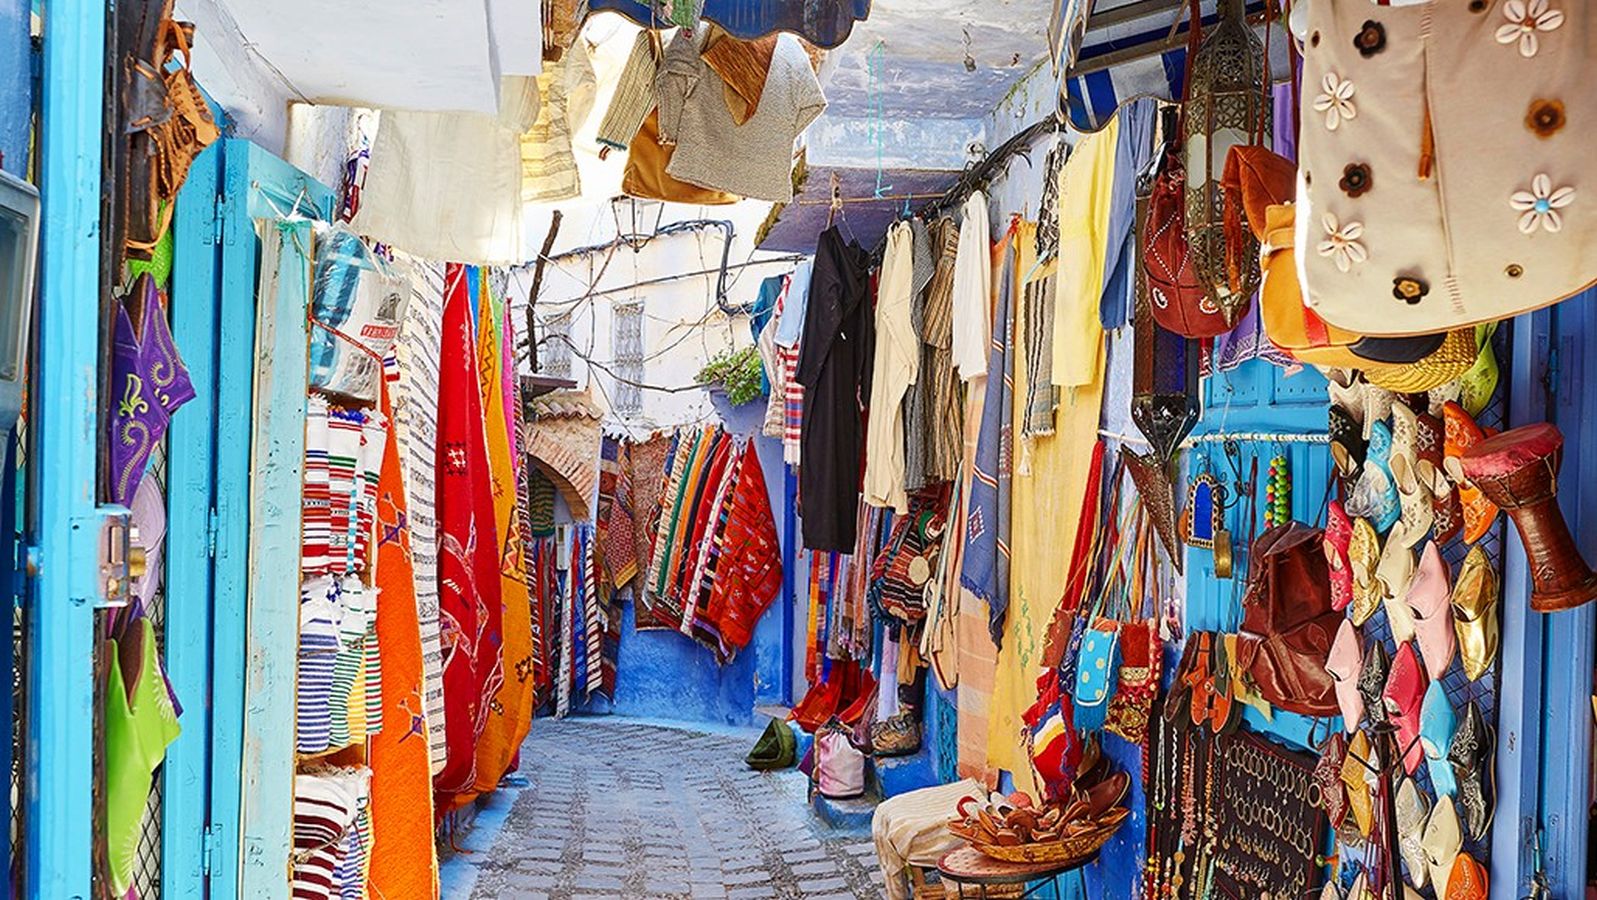 Bunt geht's zu auf den klassischen Märkten in Marokko. © visitmorocco.com